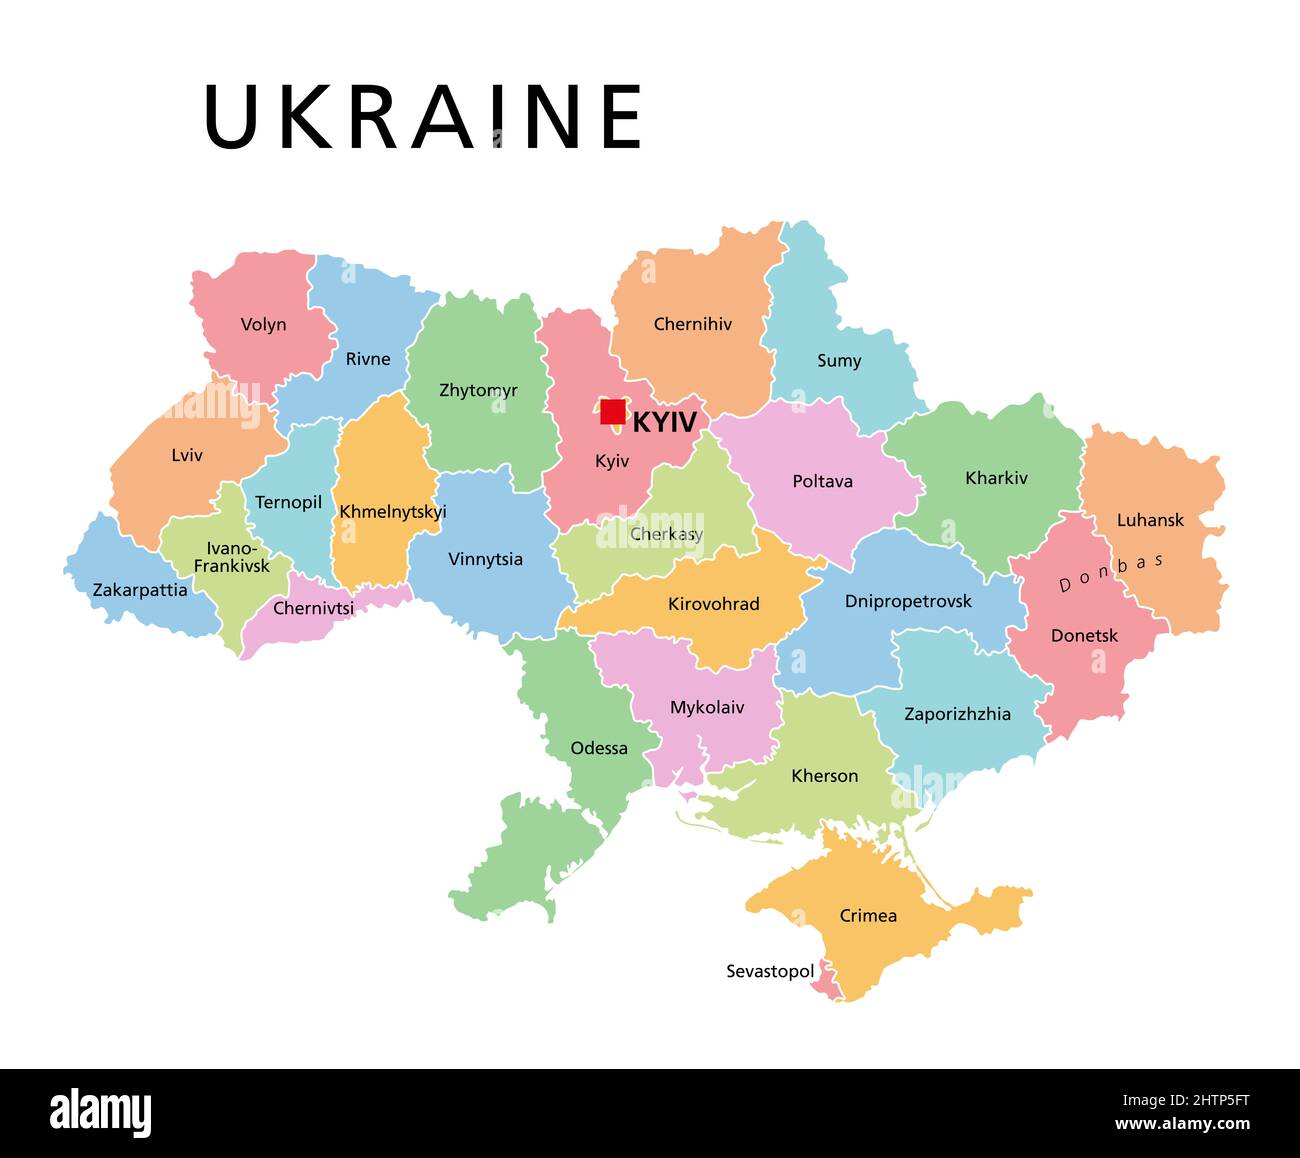 Ukraine, farbige Länderunterteilung, politische Landkarte. Verwaltungsabteilungen der Ukraine, mit Verwaltungszentren, Einheitsstaat in Osteuropa. Stockfoto